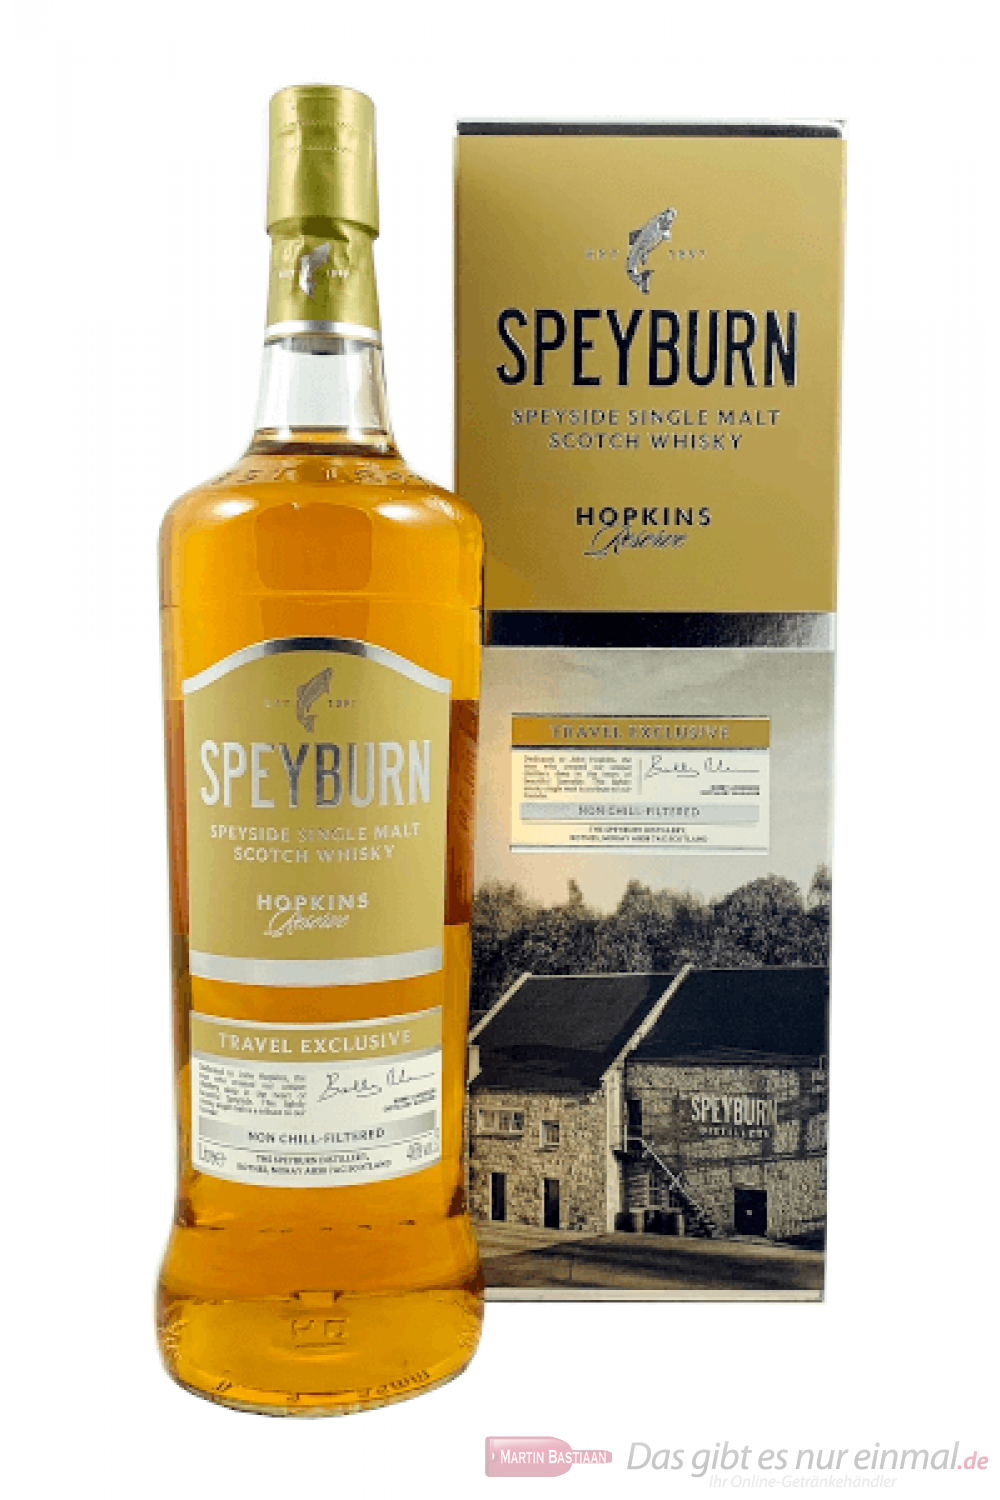 Speyburn Hopkins Reserve Single Malt Scotch Whisky 1,0l 